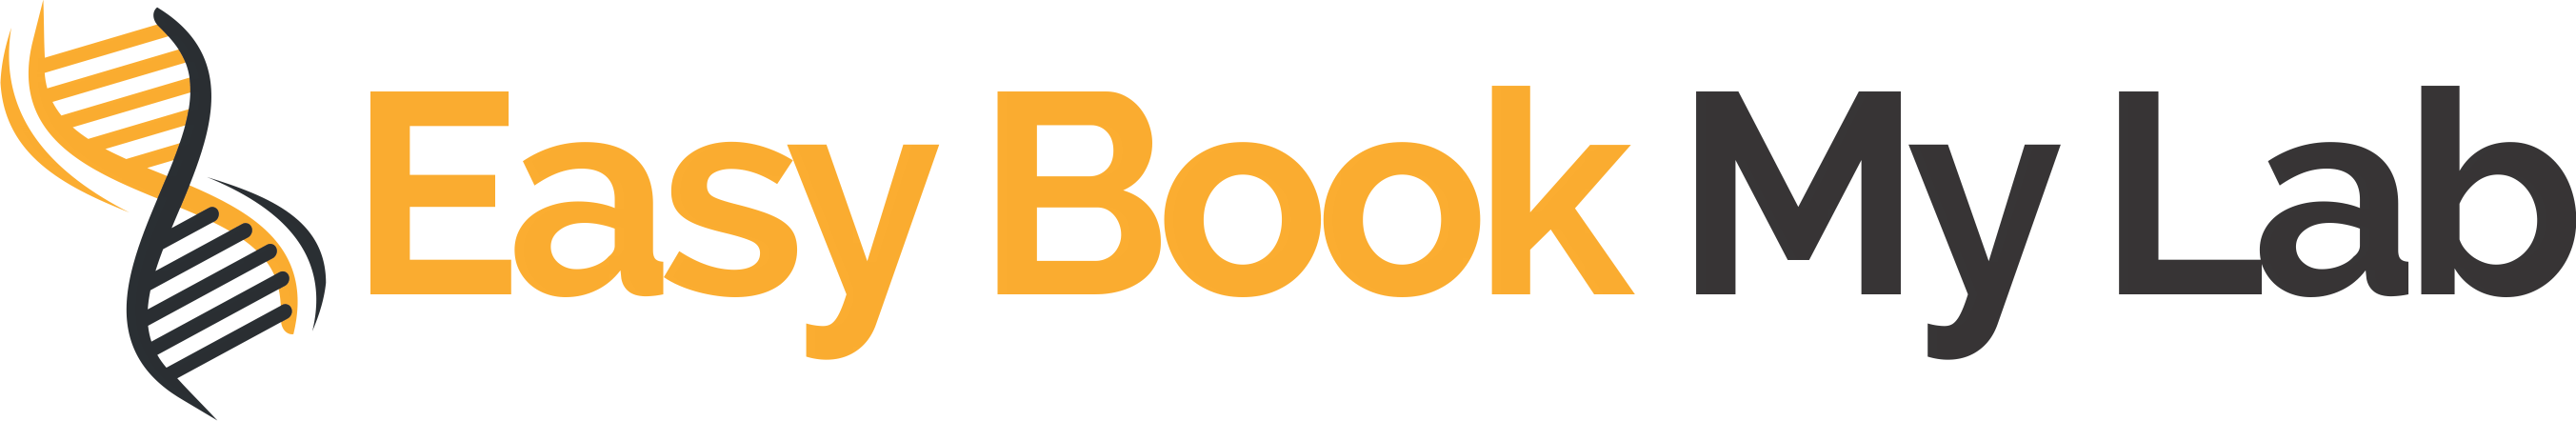 Easybookmylab Logo